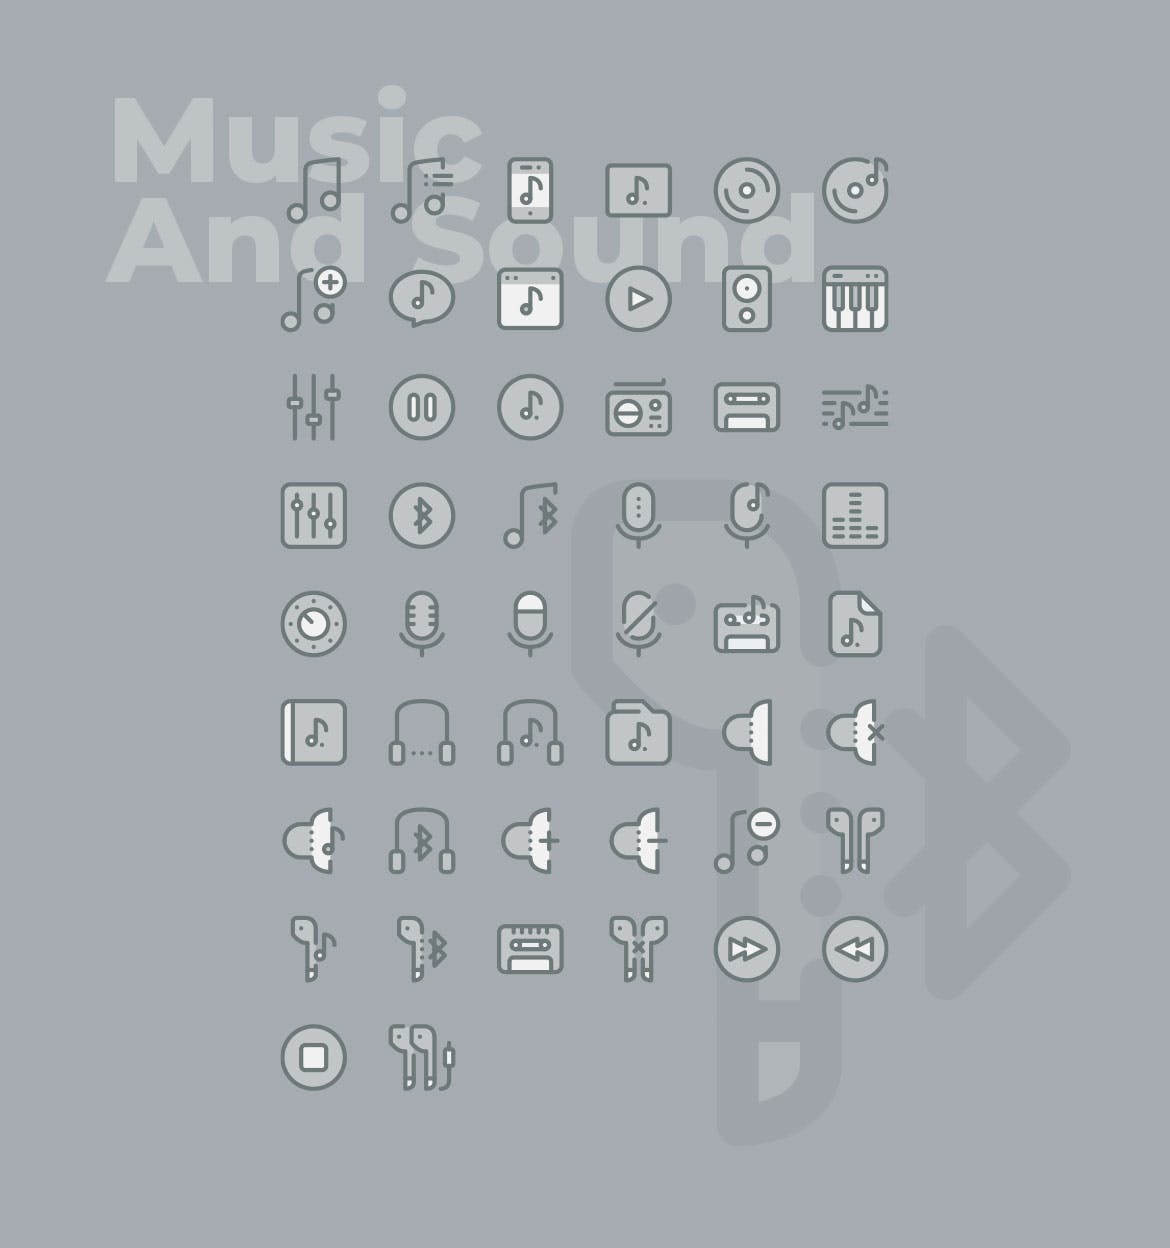 50枚音乐&声音主题矢量双色调蚂蚁素材精选图标 50 Music and Sound Icons  –  Two Tone Style插图(1)